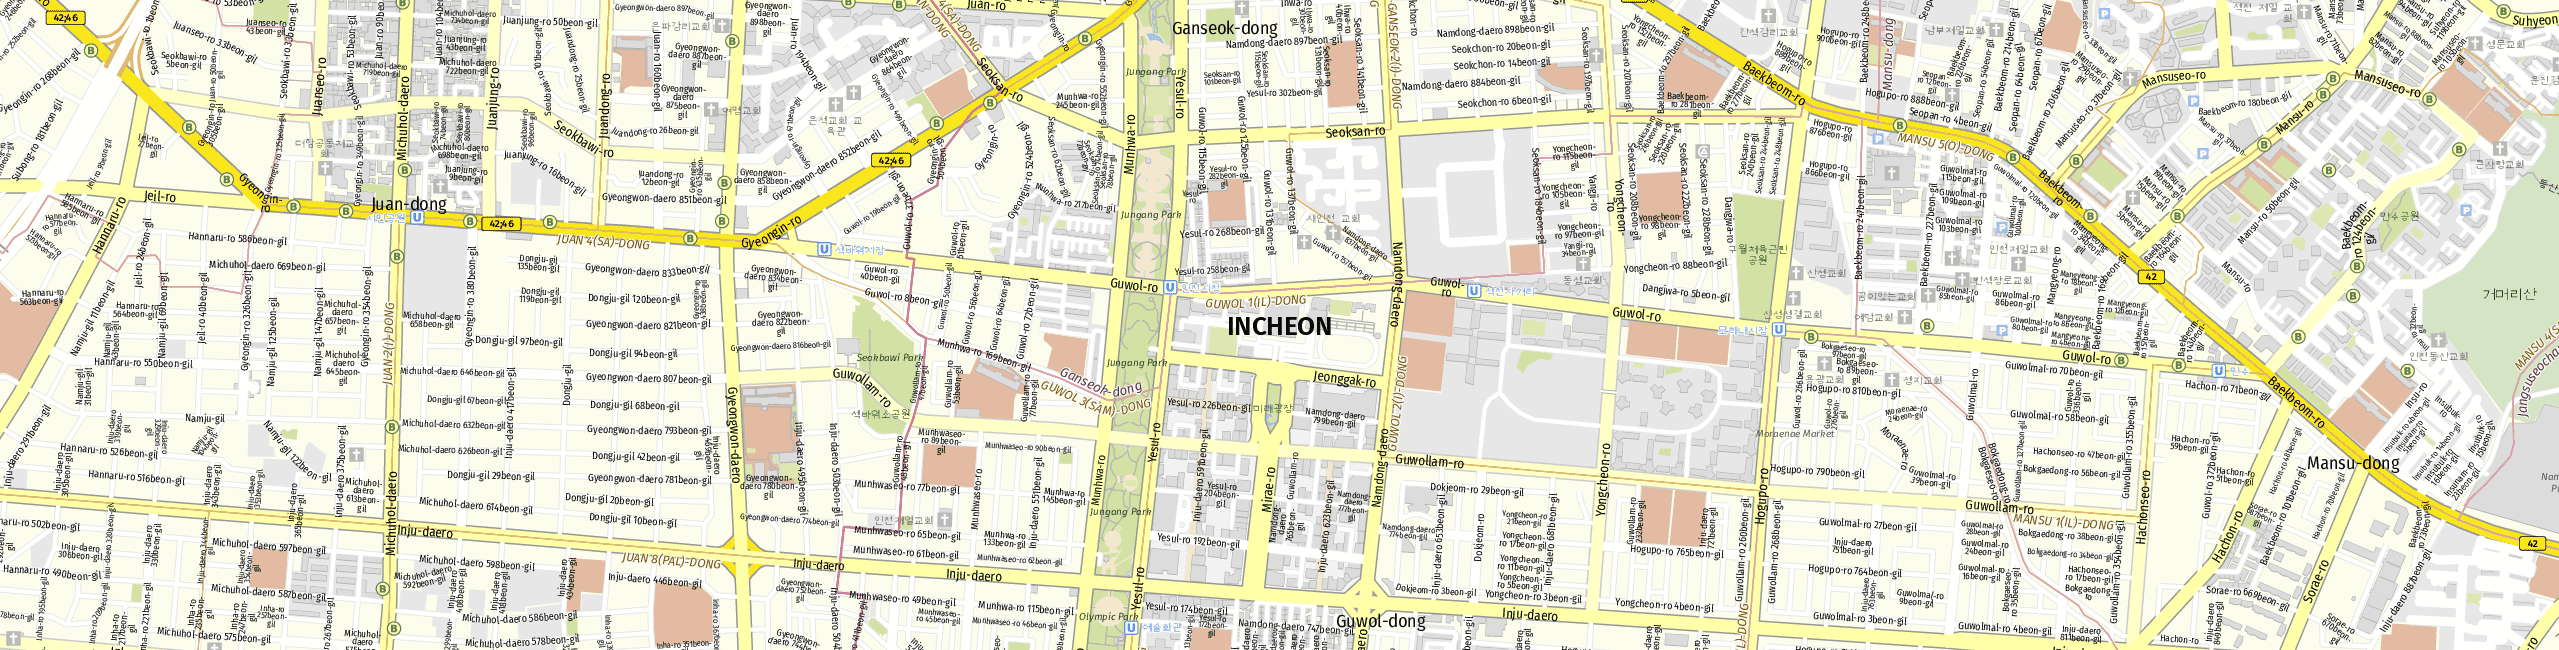 Stadtplan Incheon zum Downloaden.